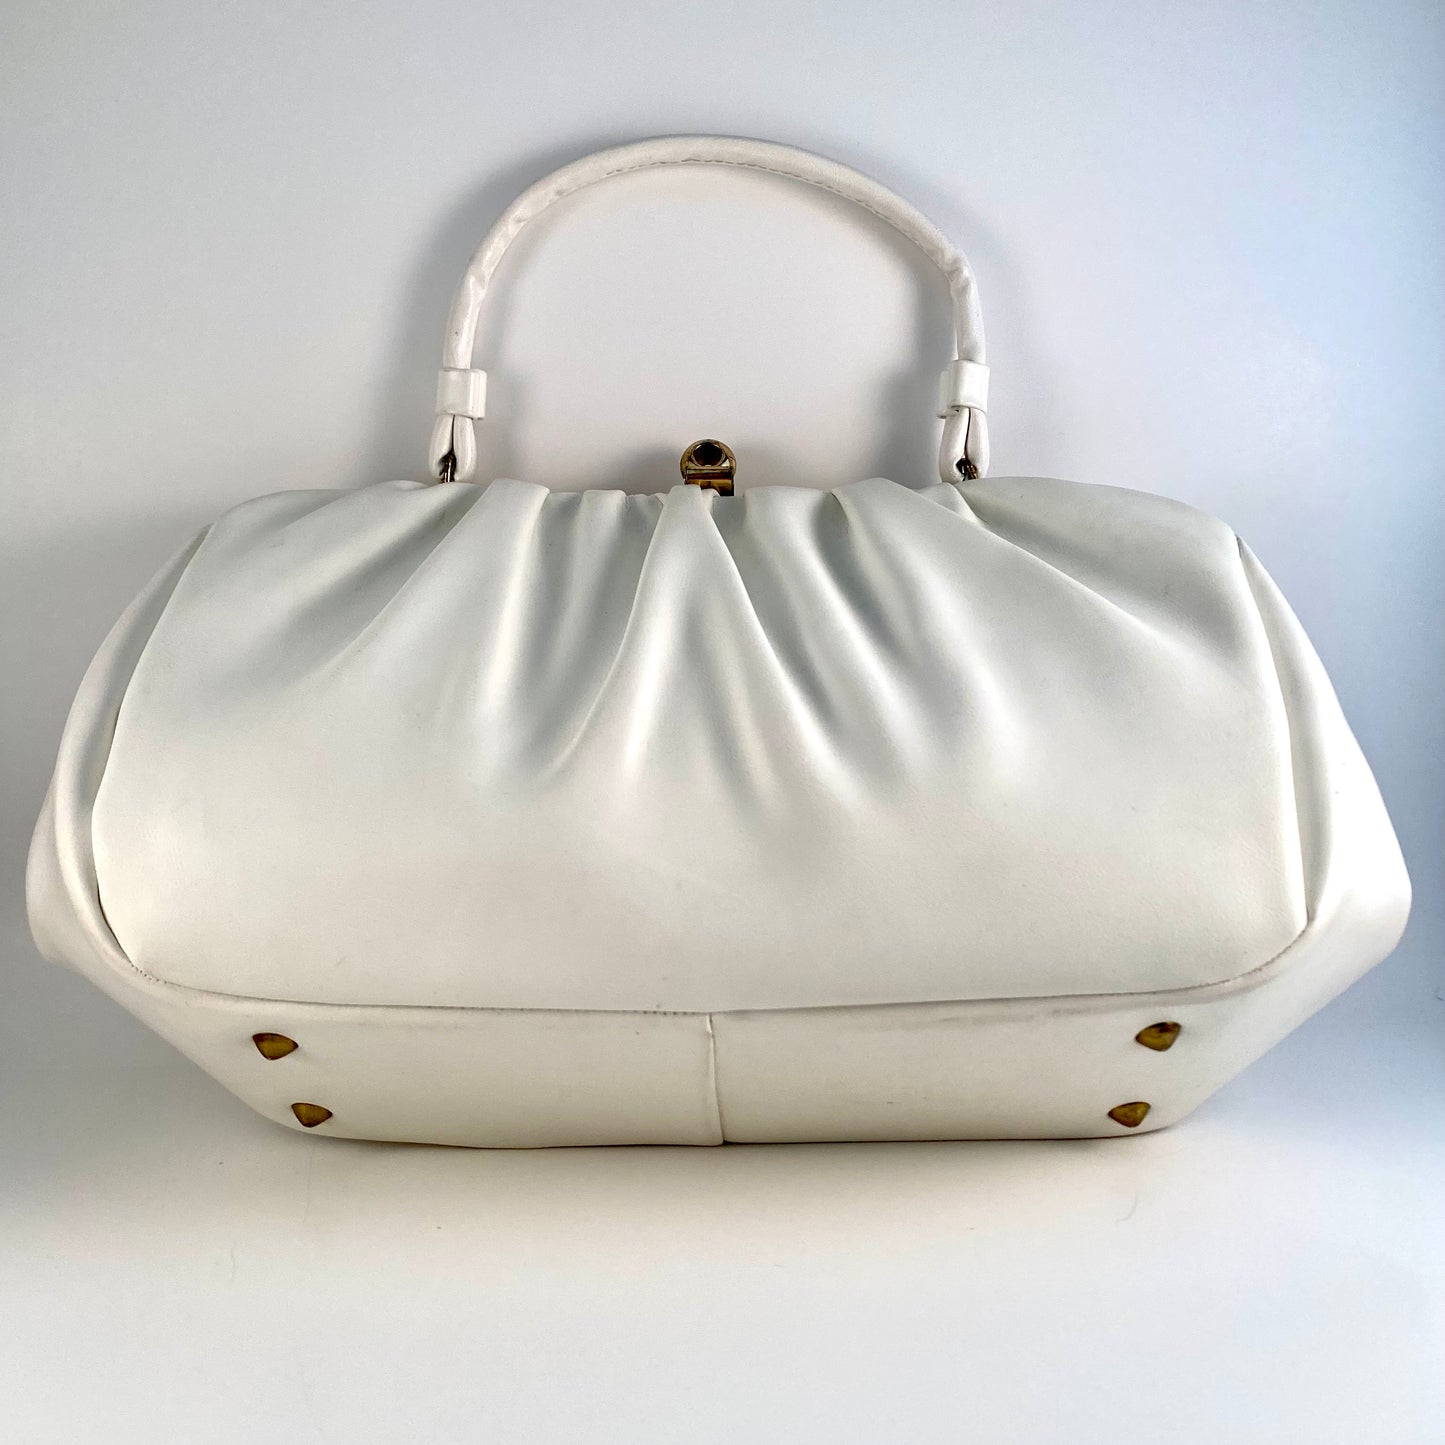 1960s White Frame Handbag